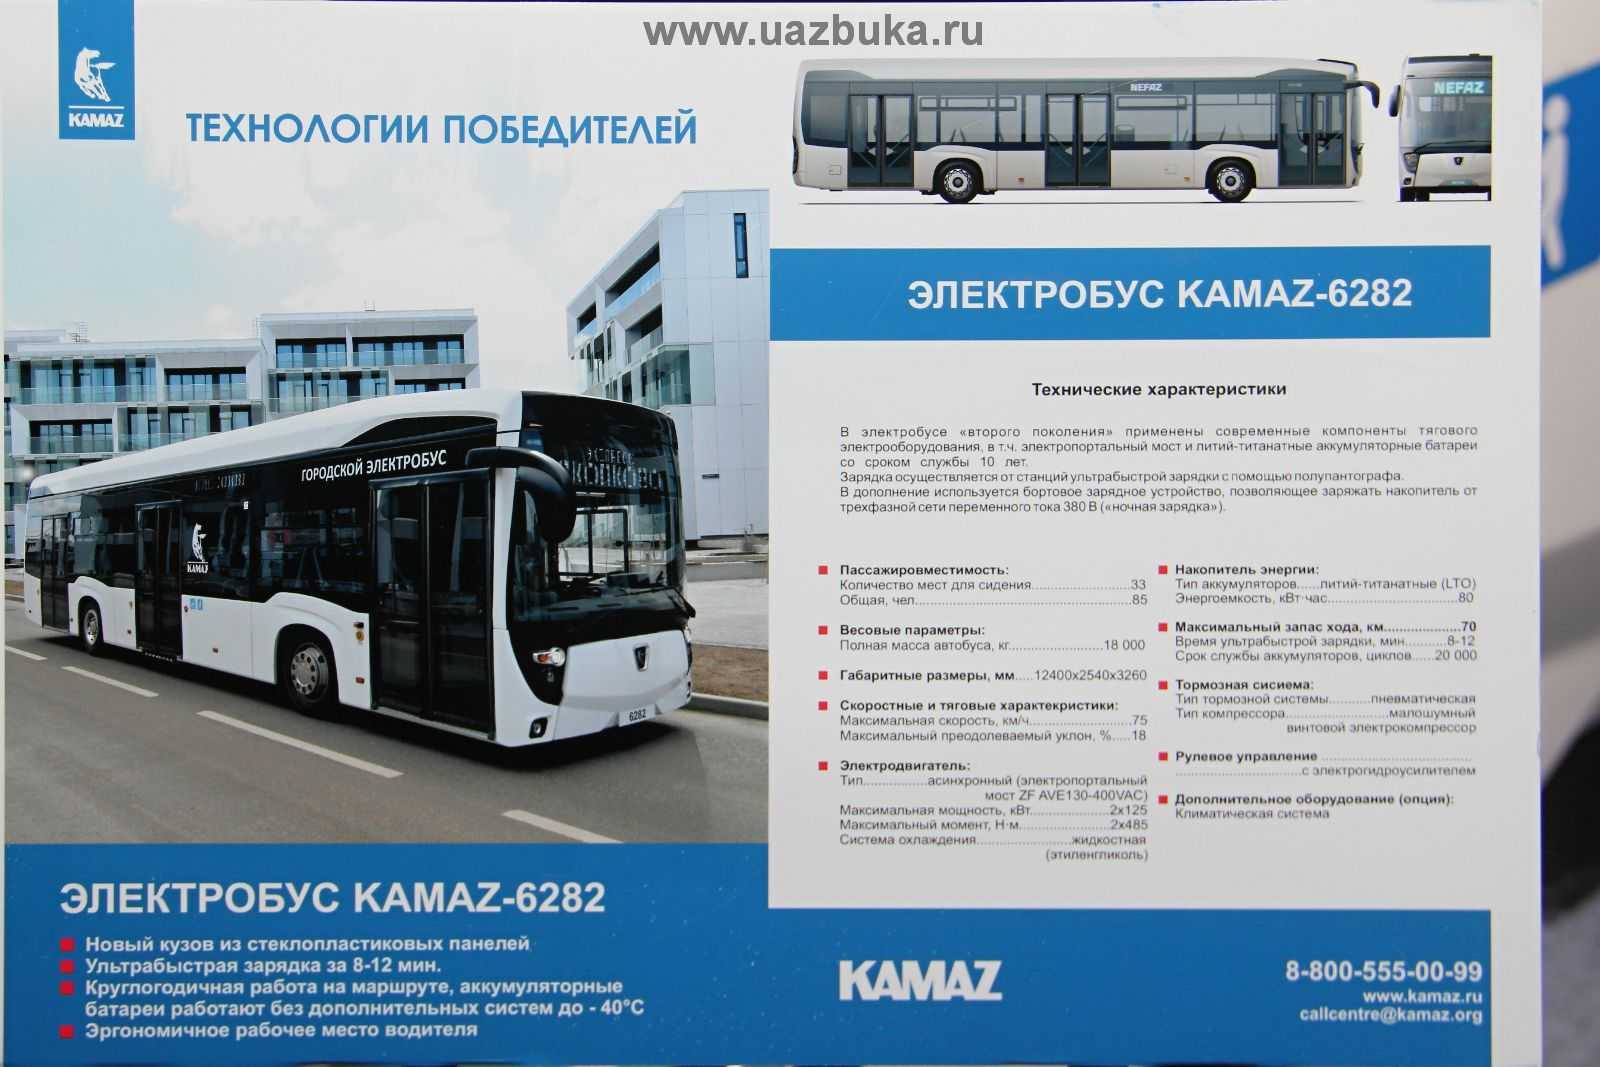 Электробус характеристики. ЛИАЗ-6274 чертежи электробус. Электробус КАМАЗ-6282. Электробус КАМАЗ характеристики технические. Электробус КАМАЗ-6282 схема.